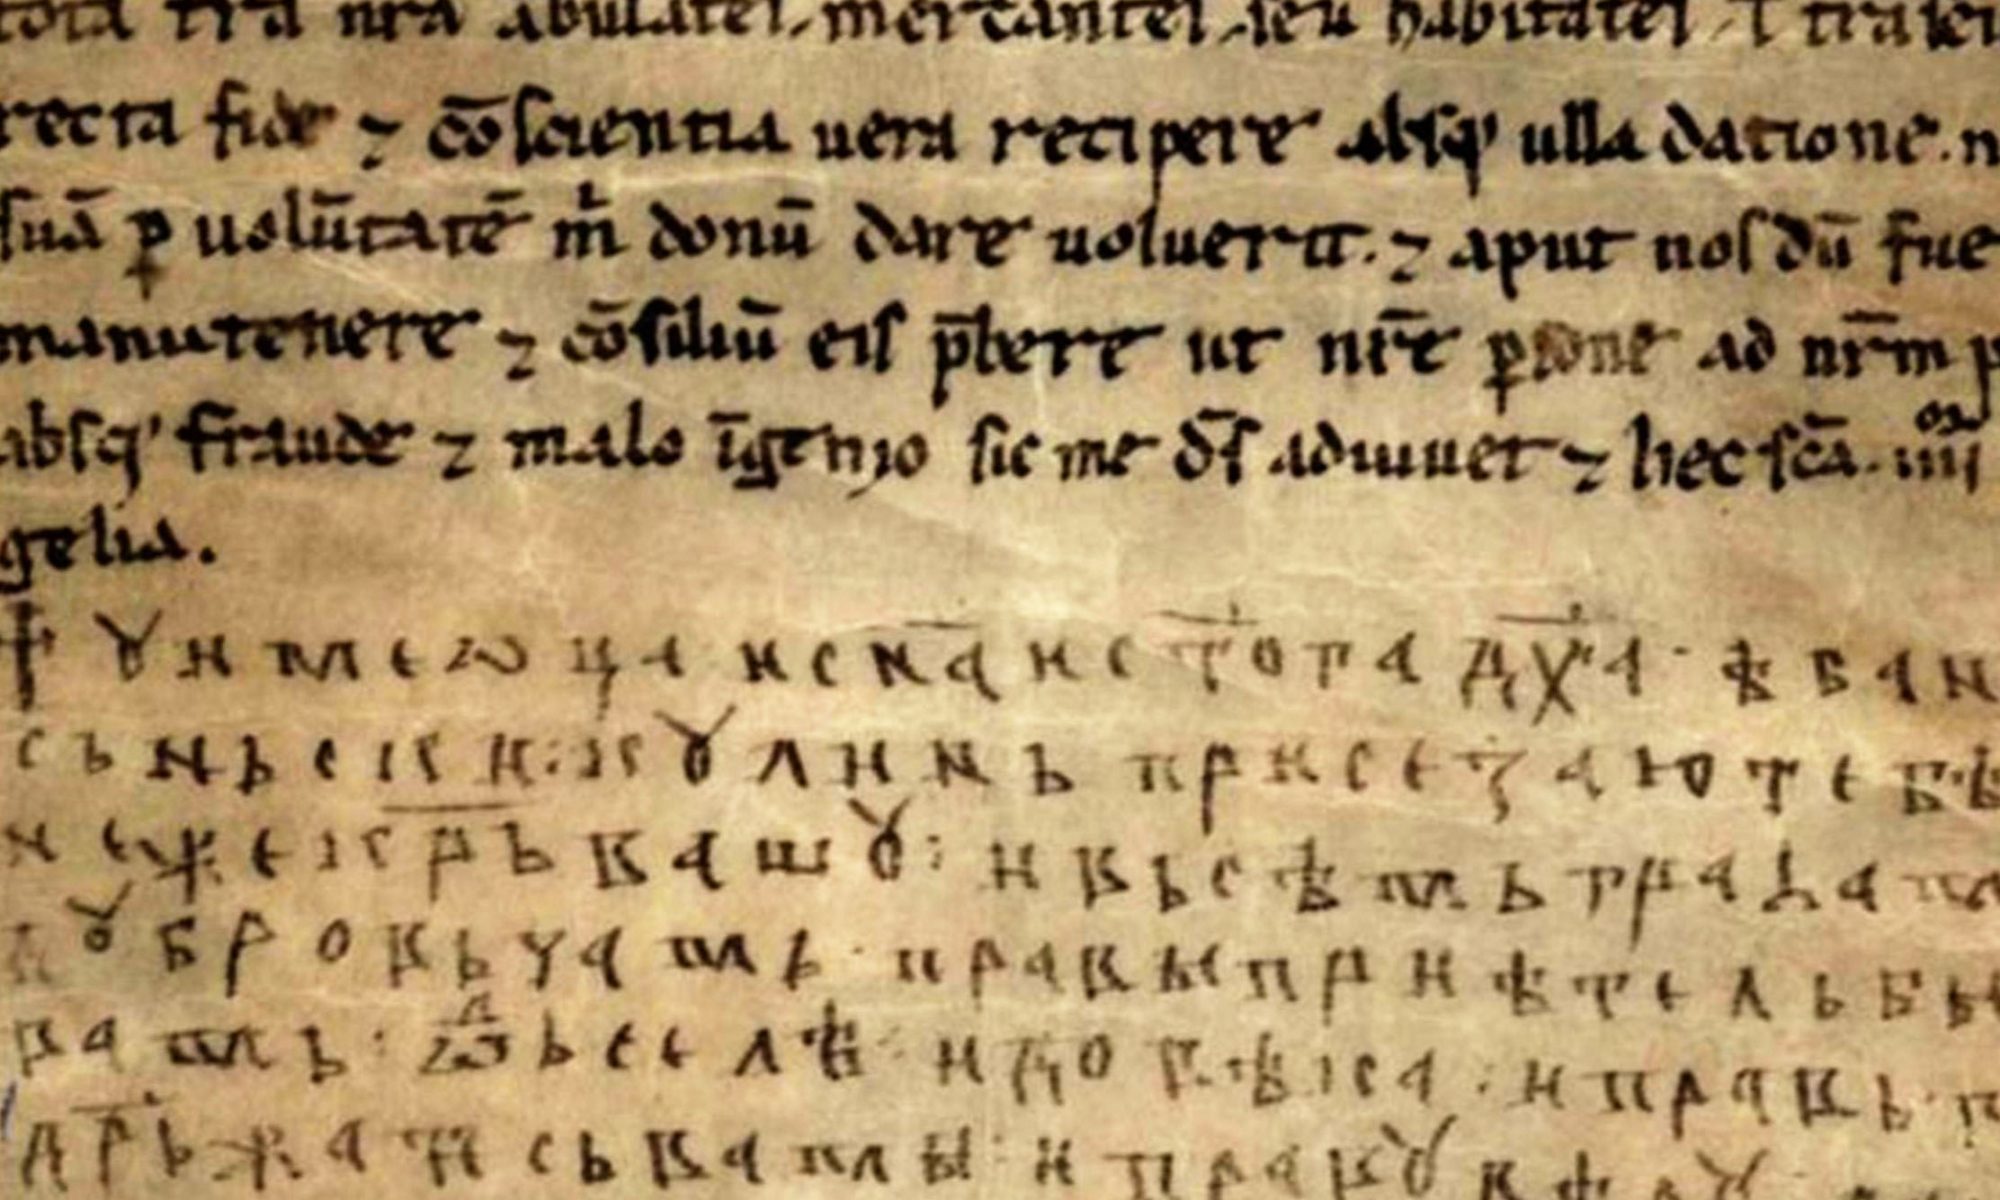 Charta von Kulin Ban, ein Handelsabkommen mit Dubrovnik von 1189